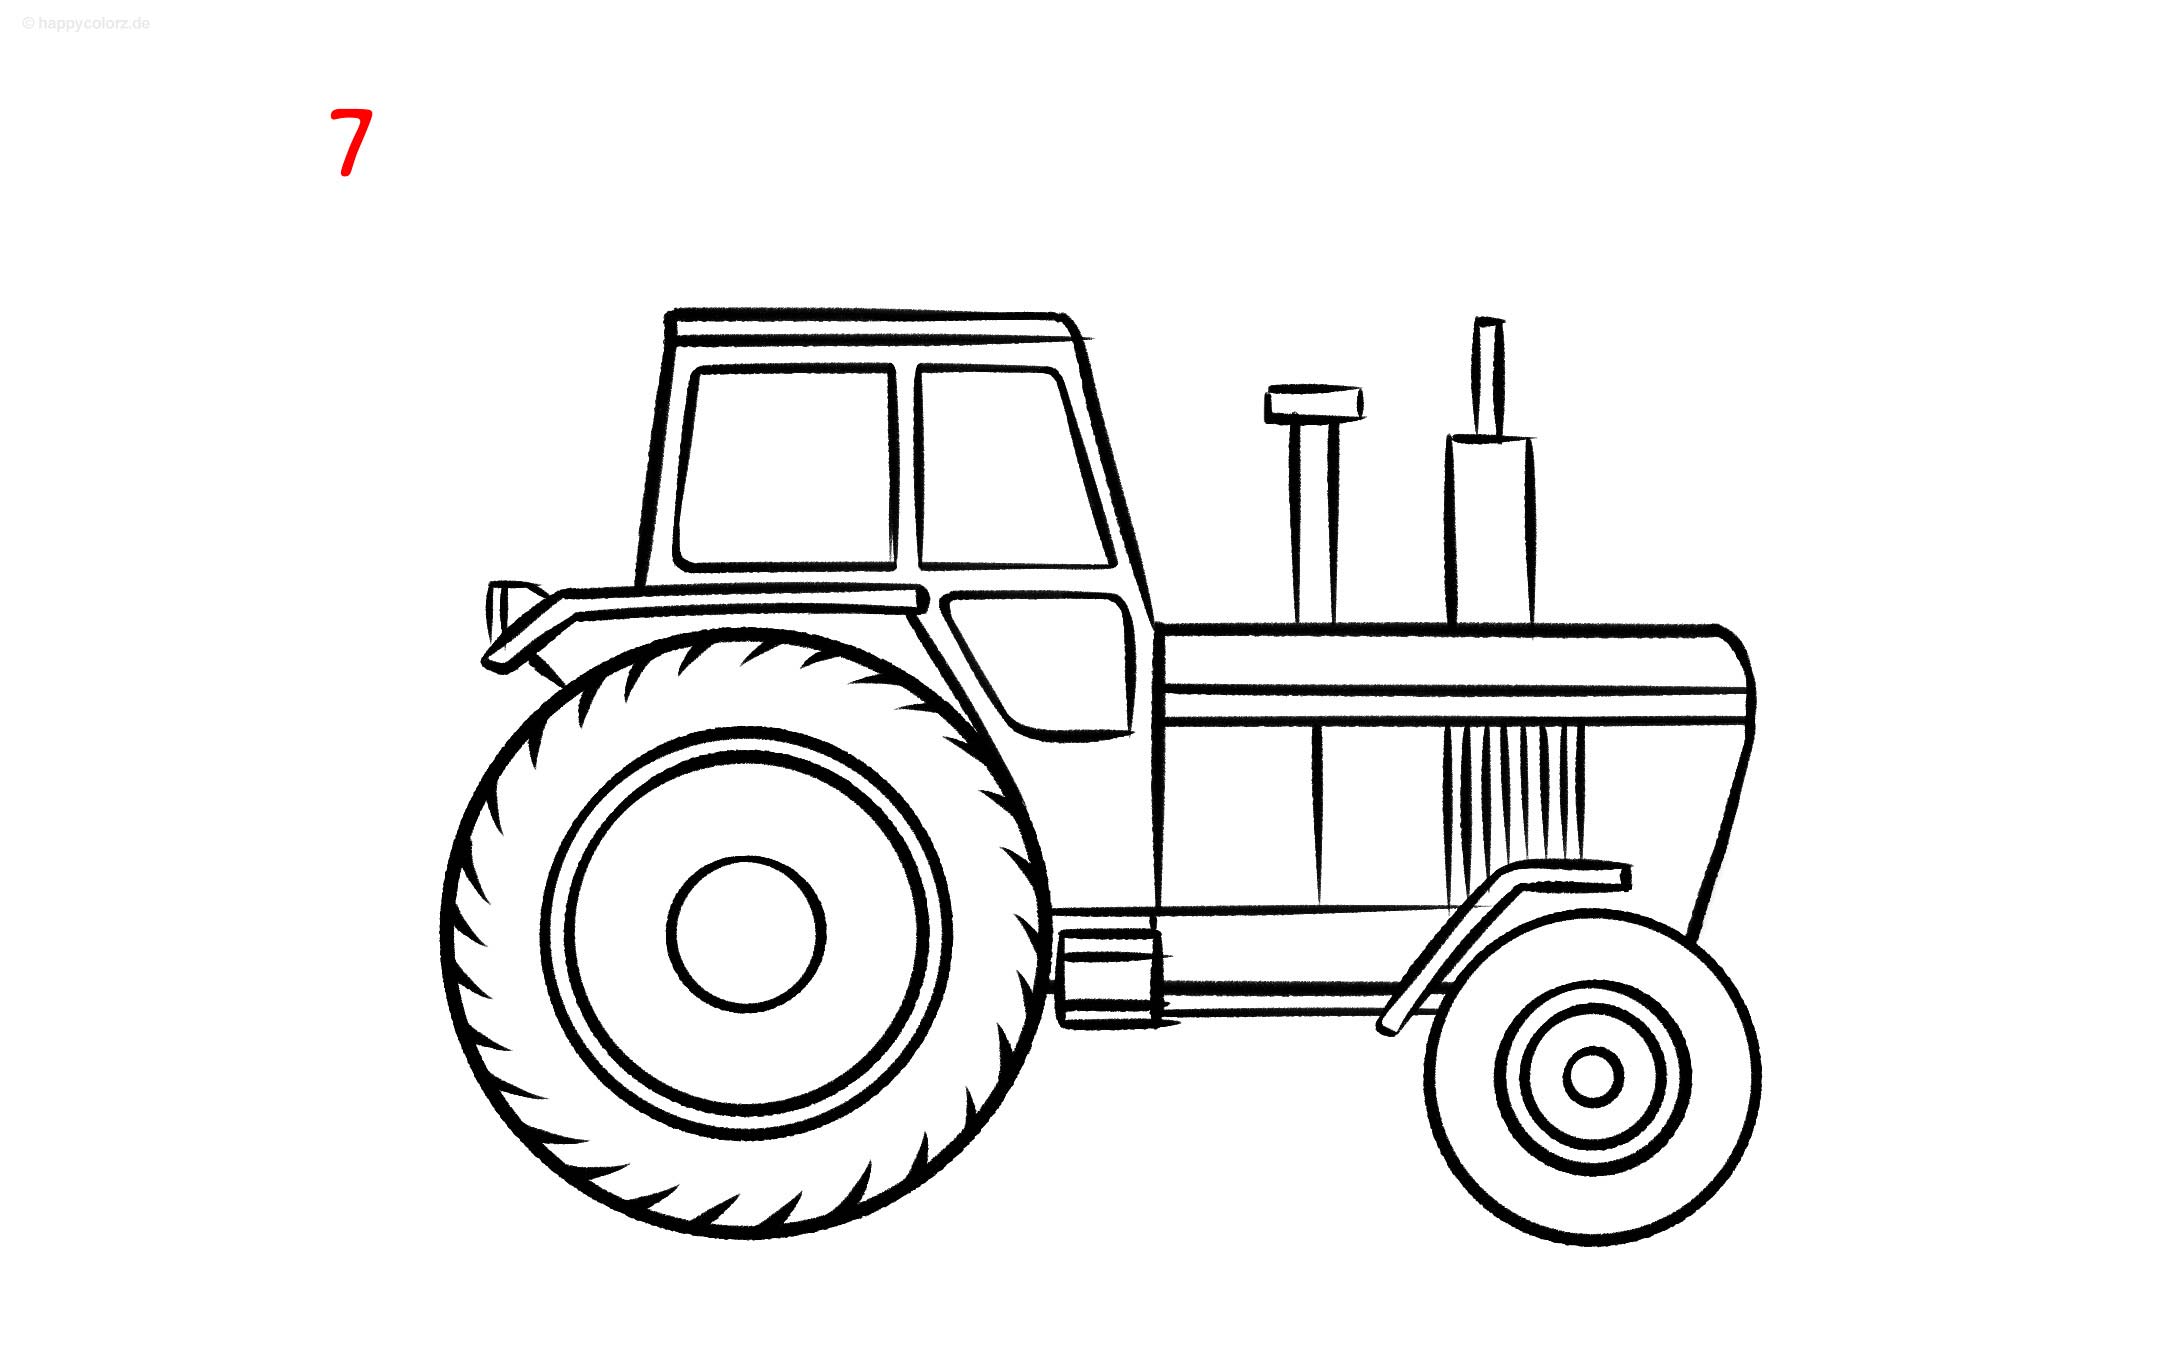 Anleitung: Traktor zeichnen